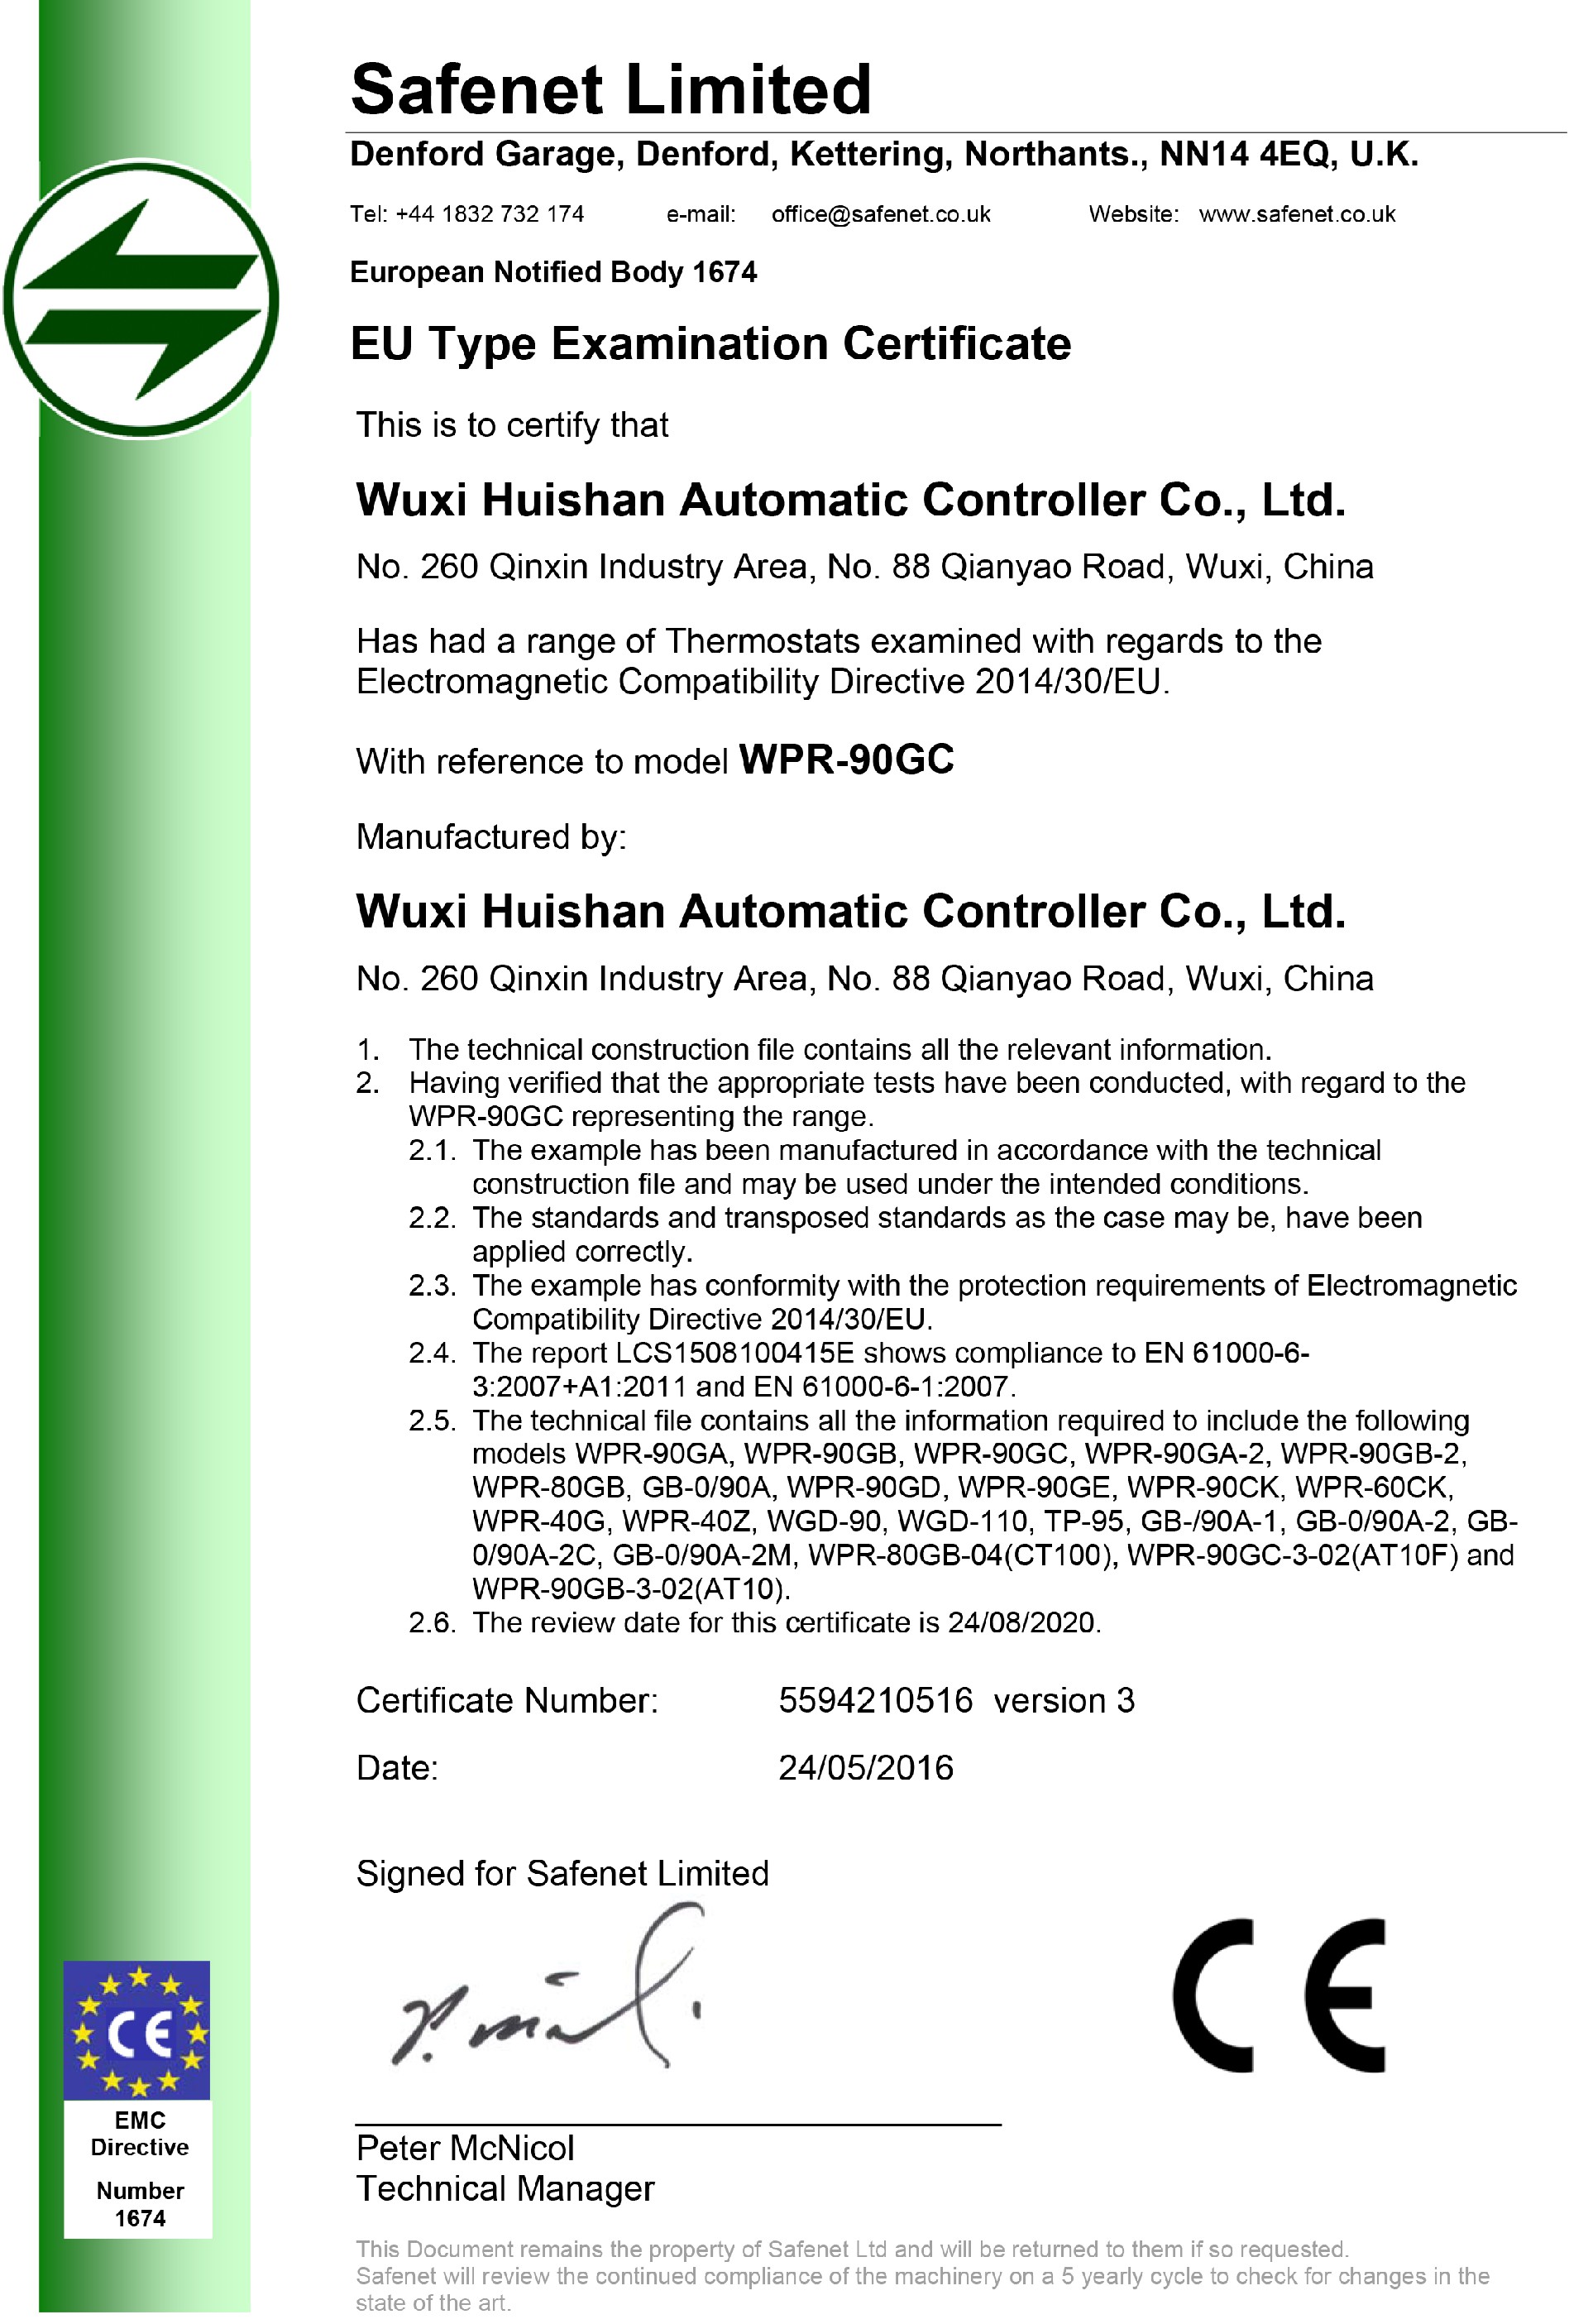 5594210516 - WPR-90GC Thermostat EMC Certificate v3.jpg